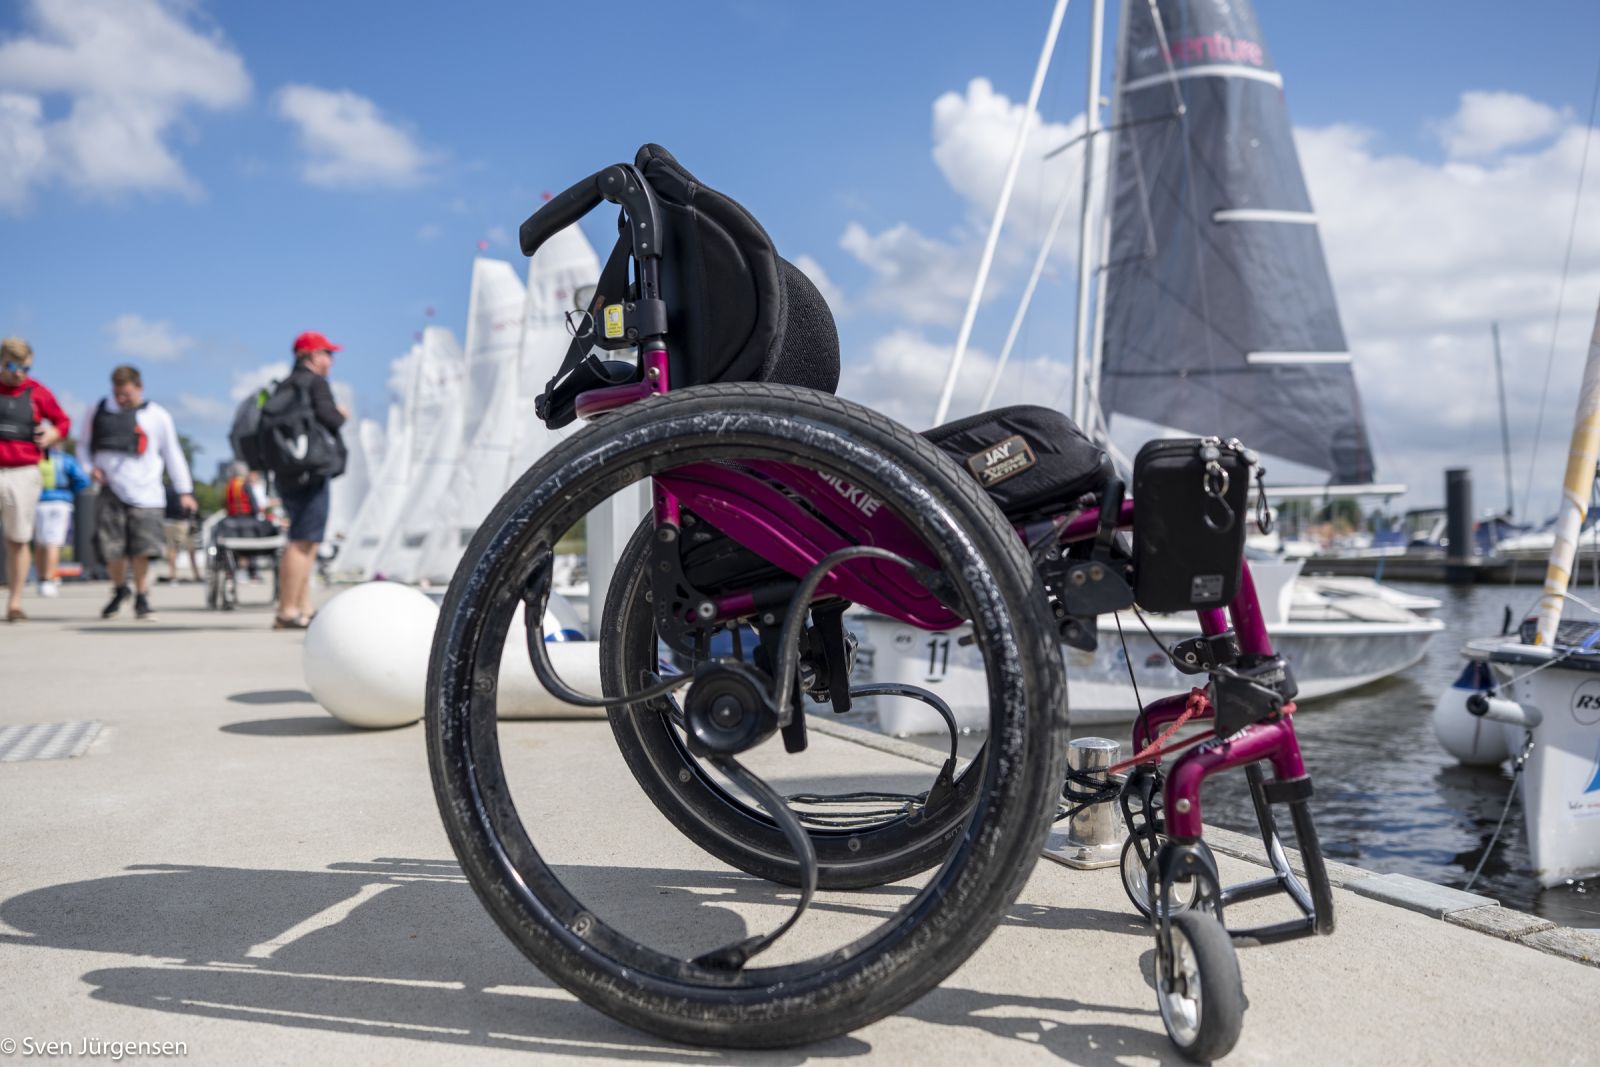 Rollstuhl im Vordergrund auf einem betonsteg mit Segelbooten im Hintergrund